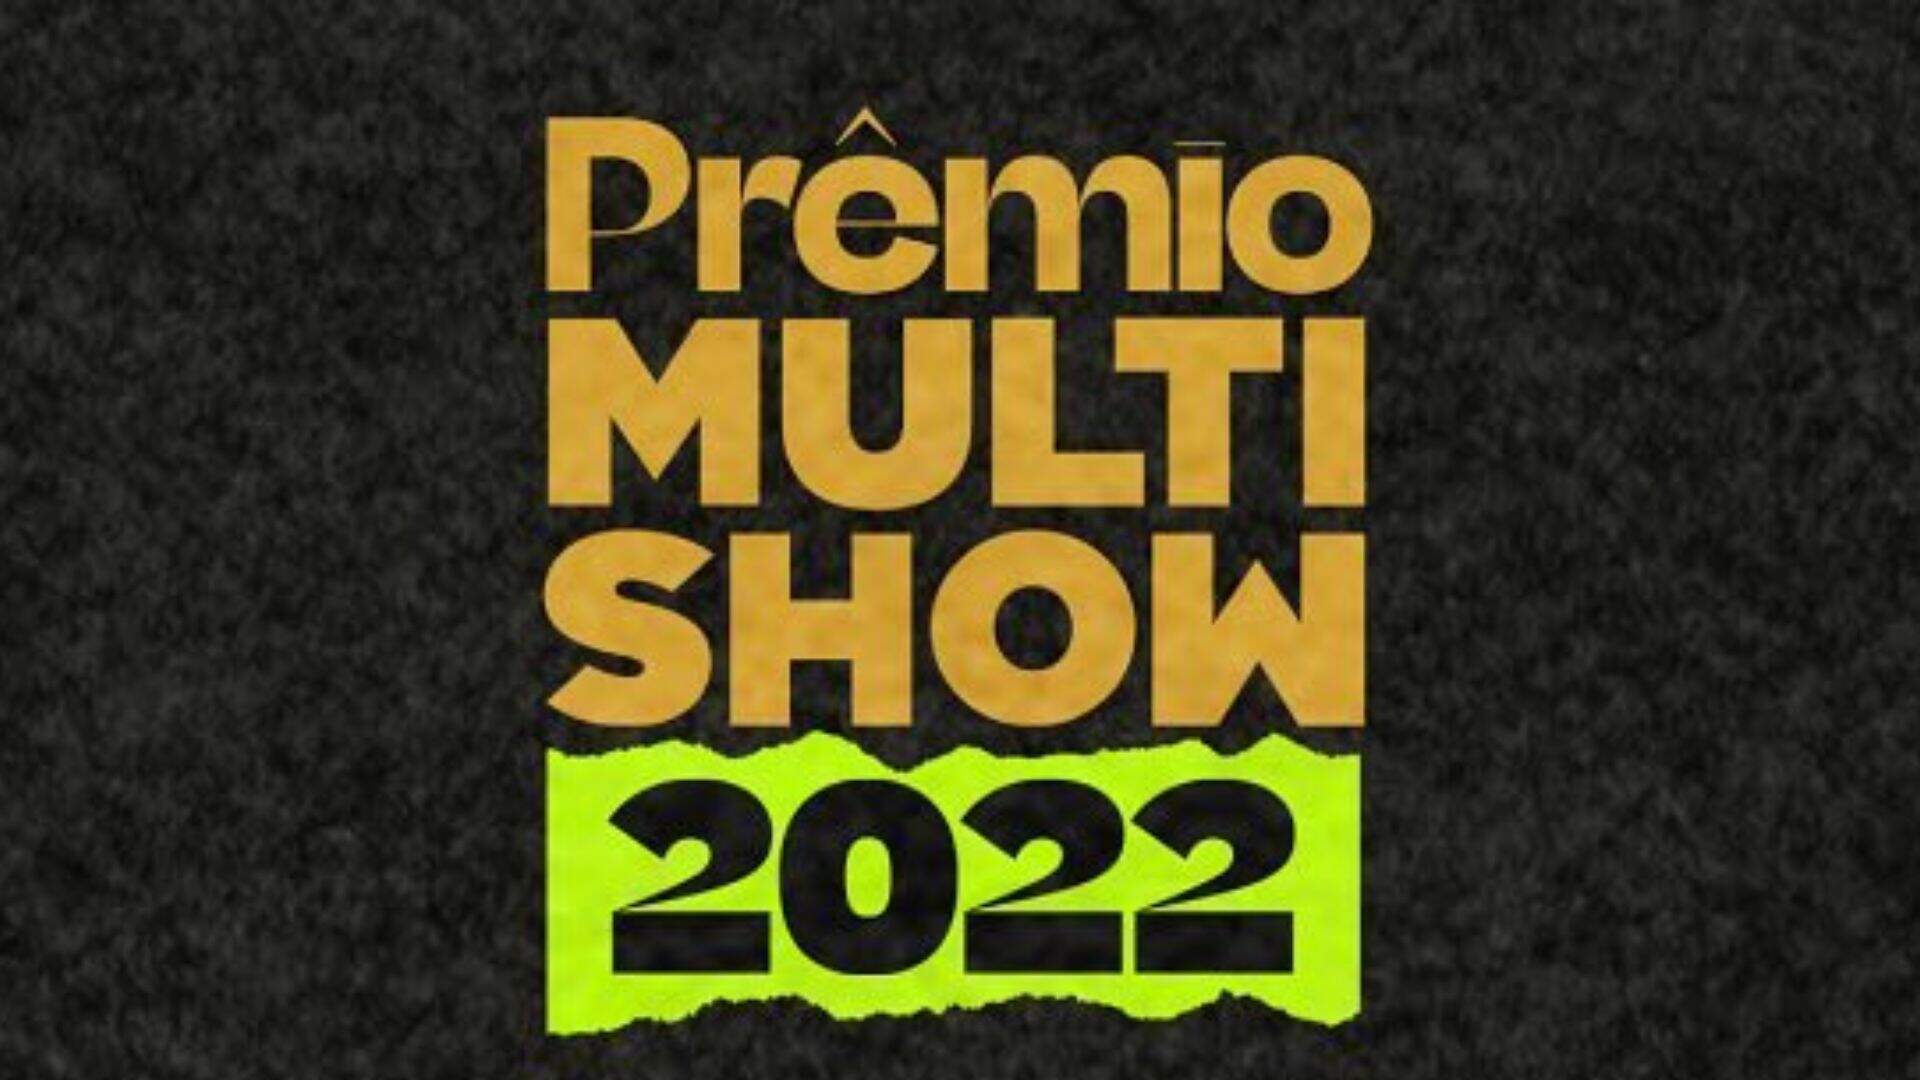 Descubra quem serão os apresentadores do “Prêmio Multishow 2022” - Metropolitana FM